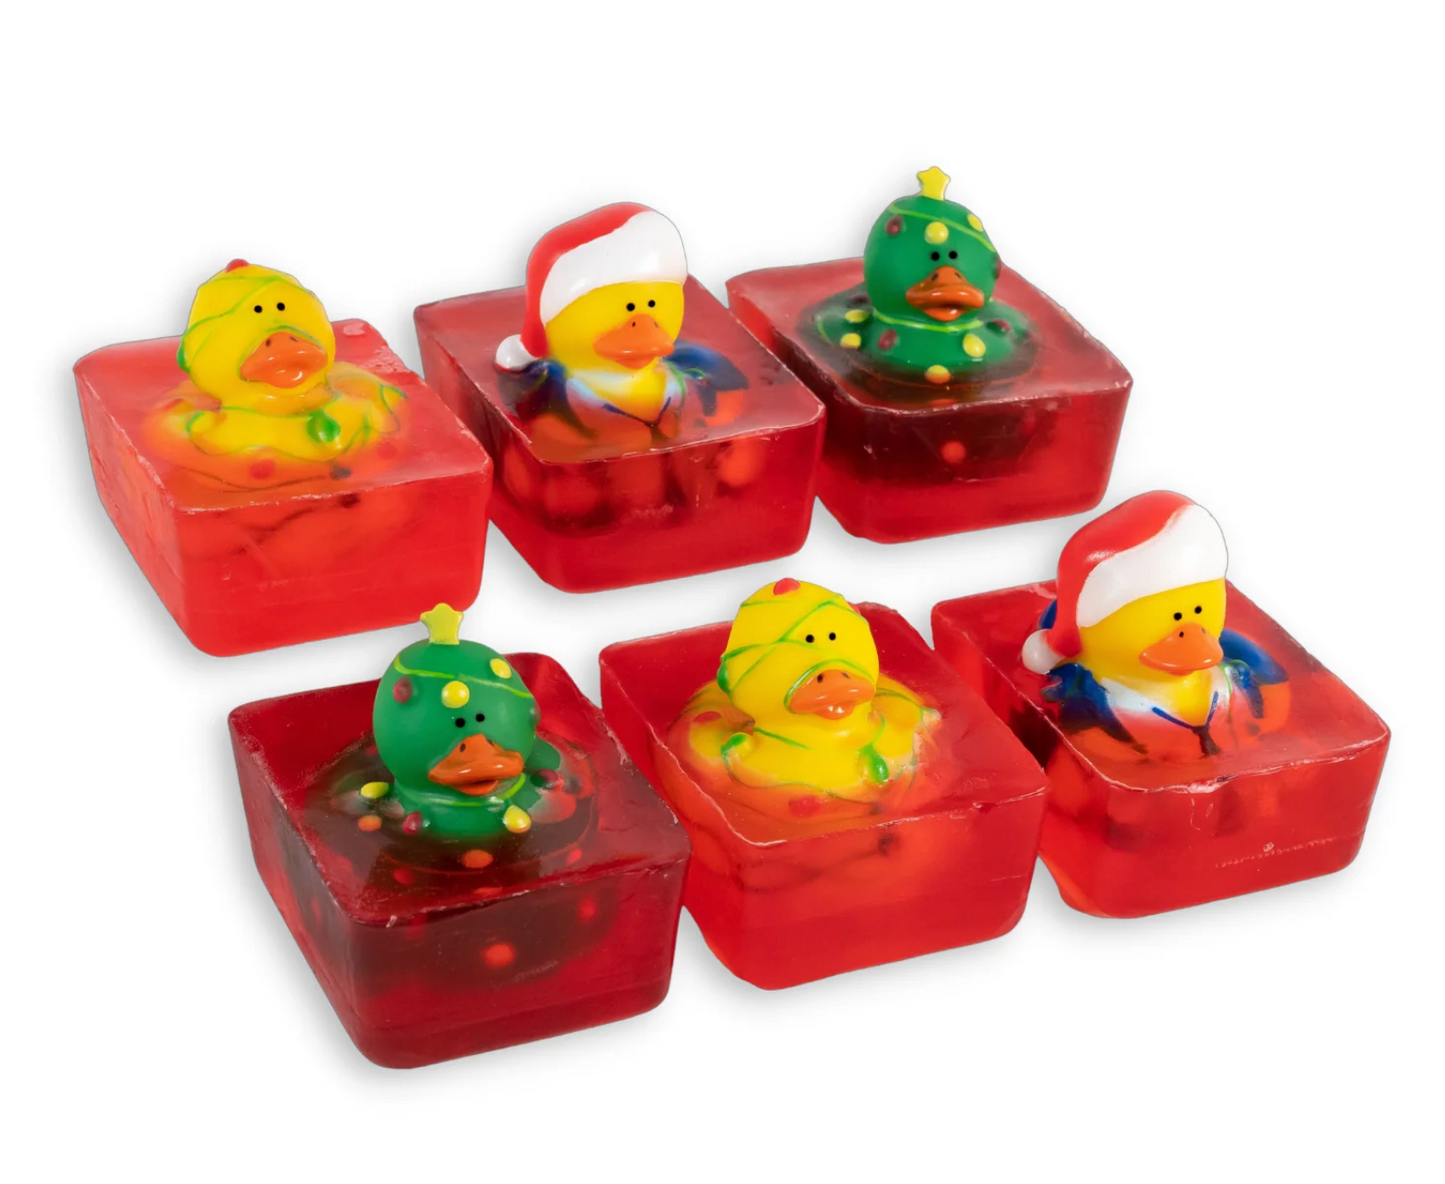 Bathtub Duck Toy Soaps